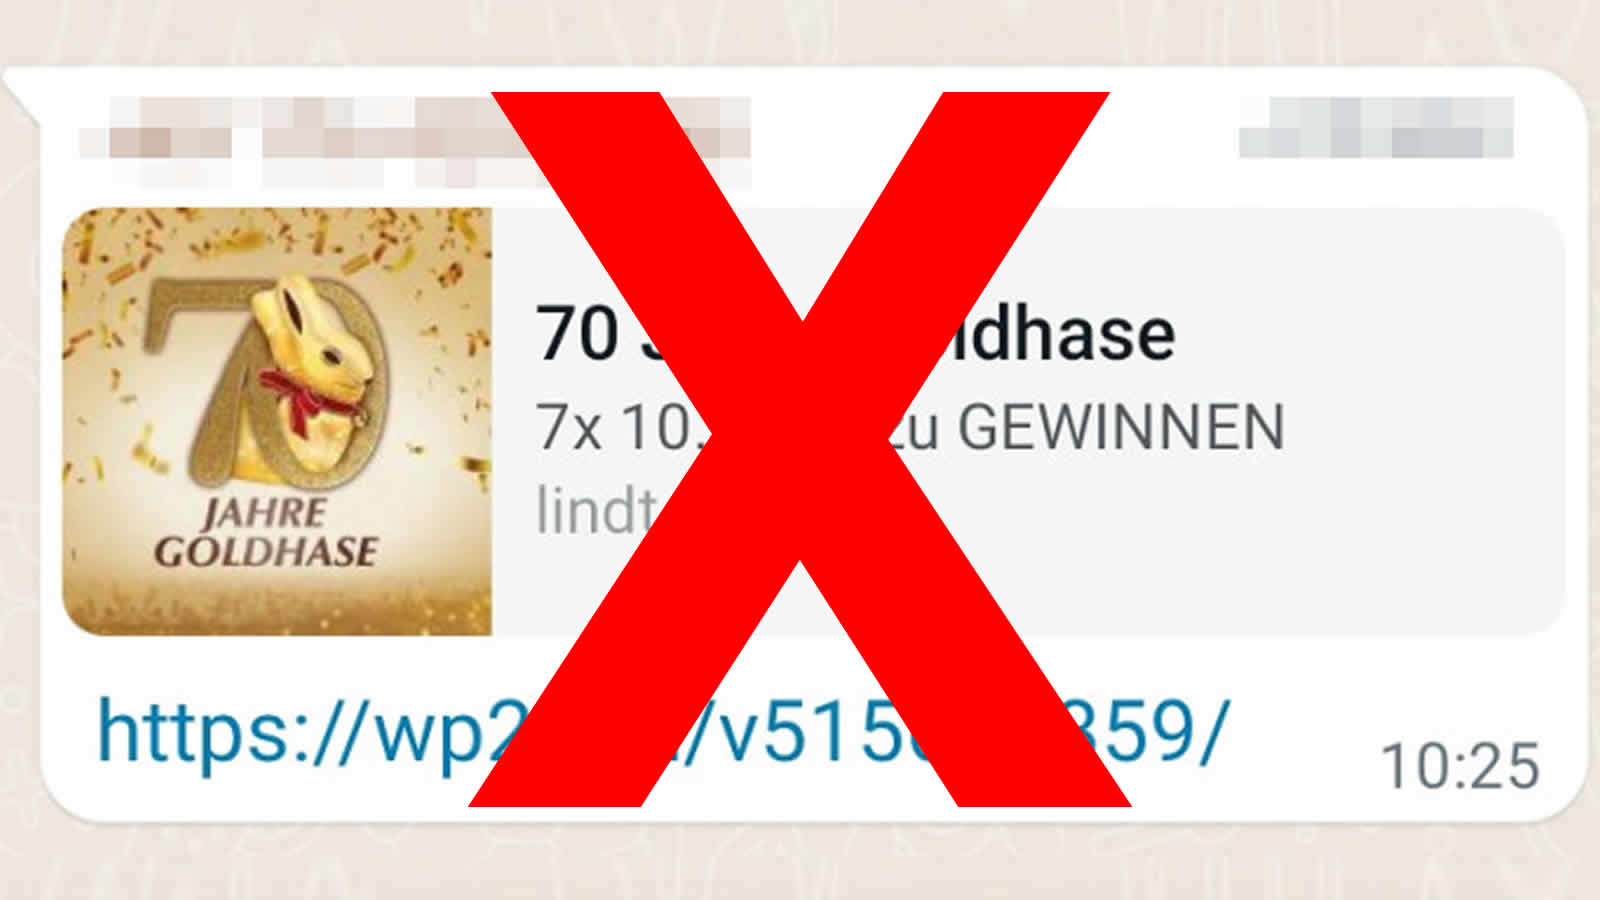 WhatsApp-Warnung vor: „70 Jahre Goldhase“ von "lindt.de"